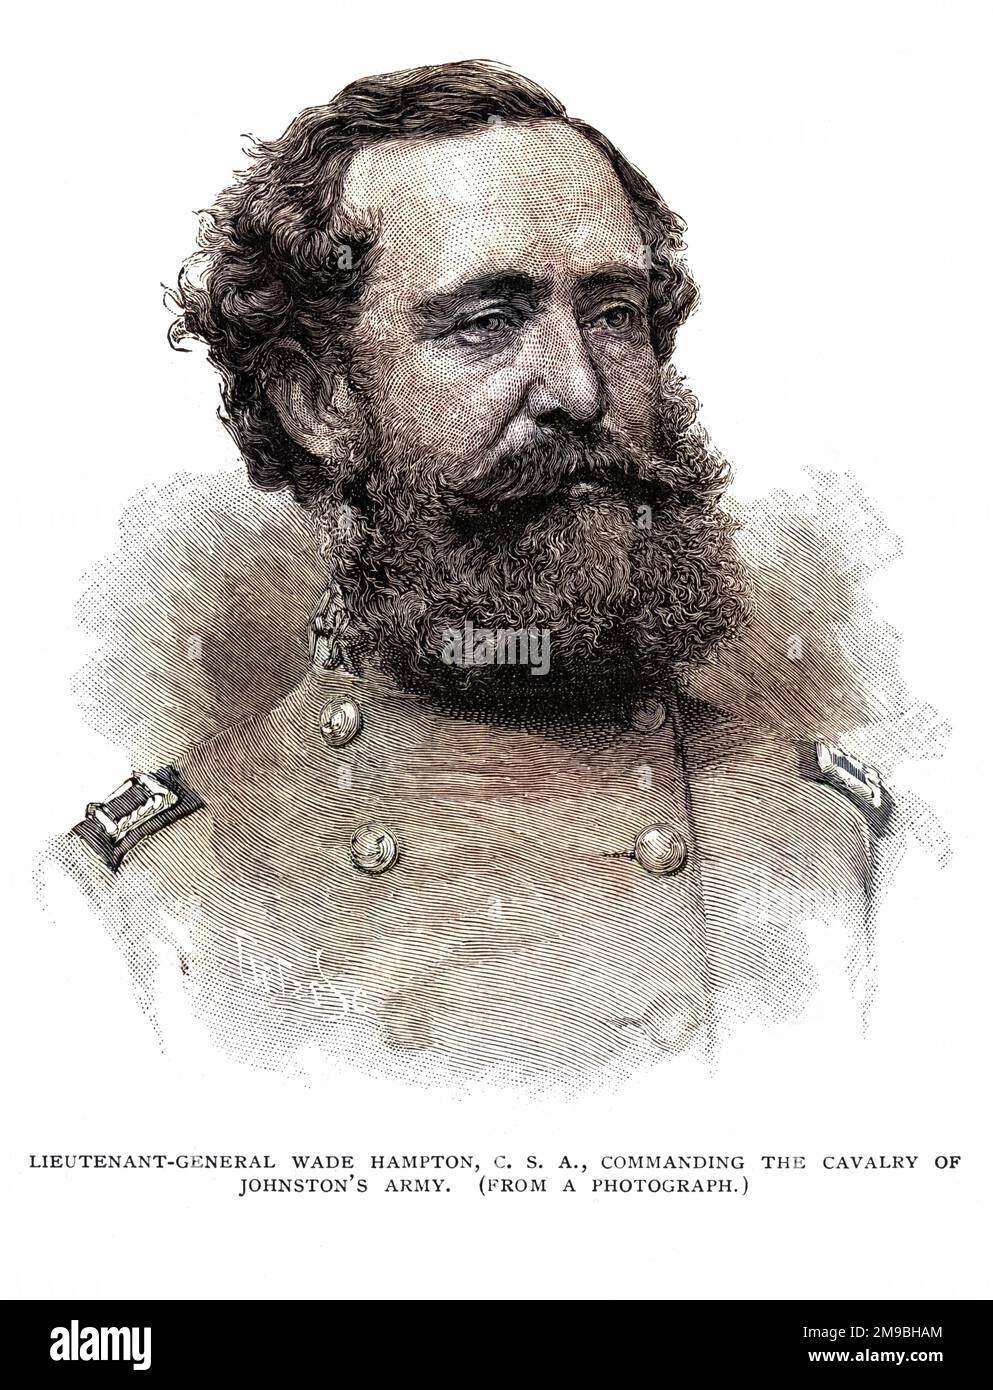 Generalleutnant WADE HAMPTON, amerikanischer Soldat, befehlshabender Offizier der Konföderierten Armee während des Krieges zwischen den Staaten. Stockfoto